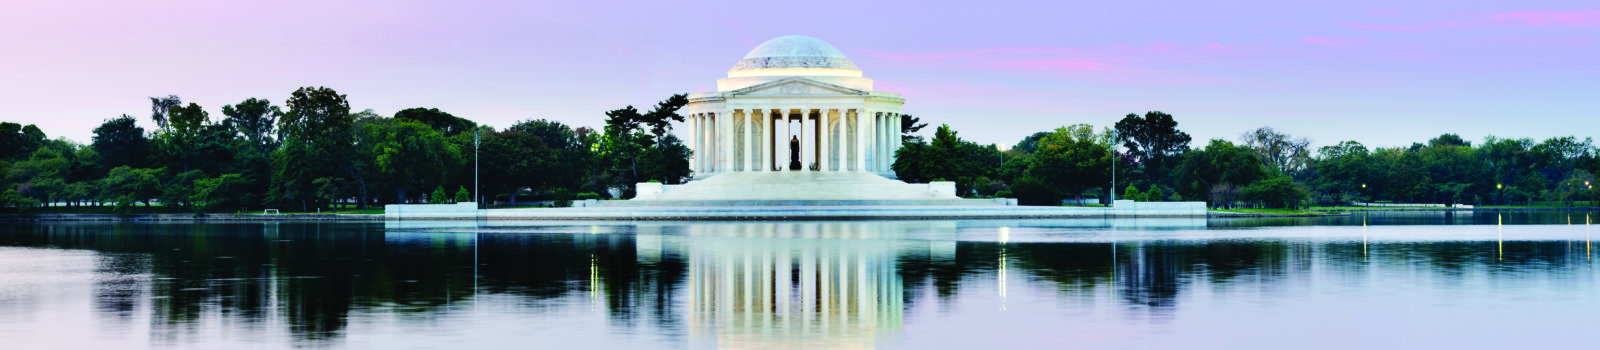 The Thomas Jefferson Memorial at twilight, Washington DC, USA.